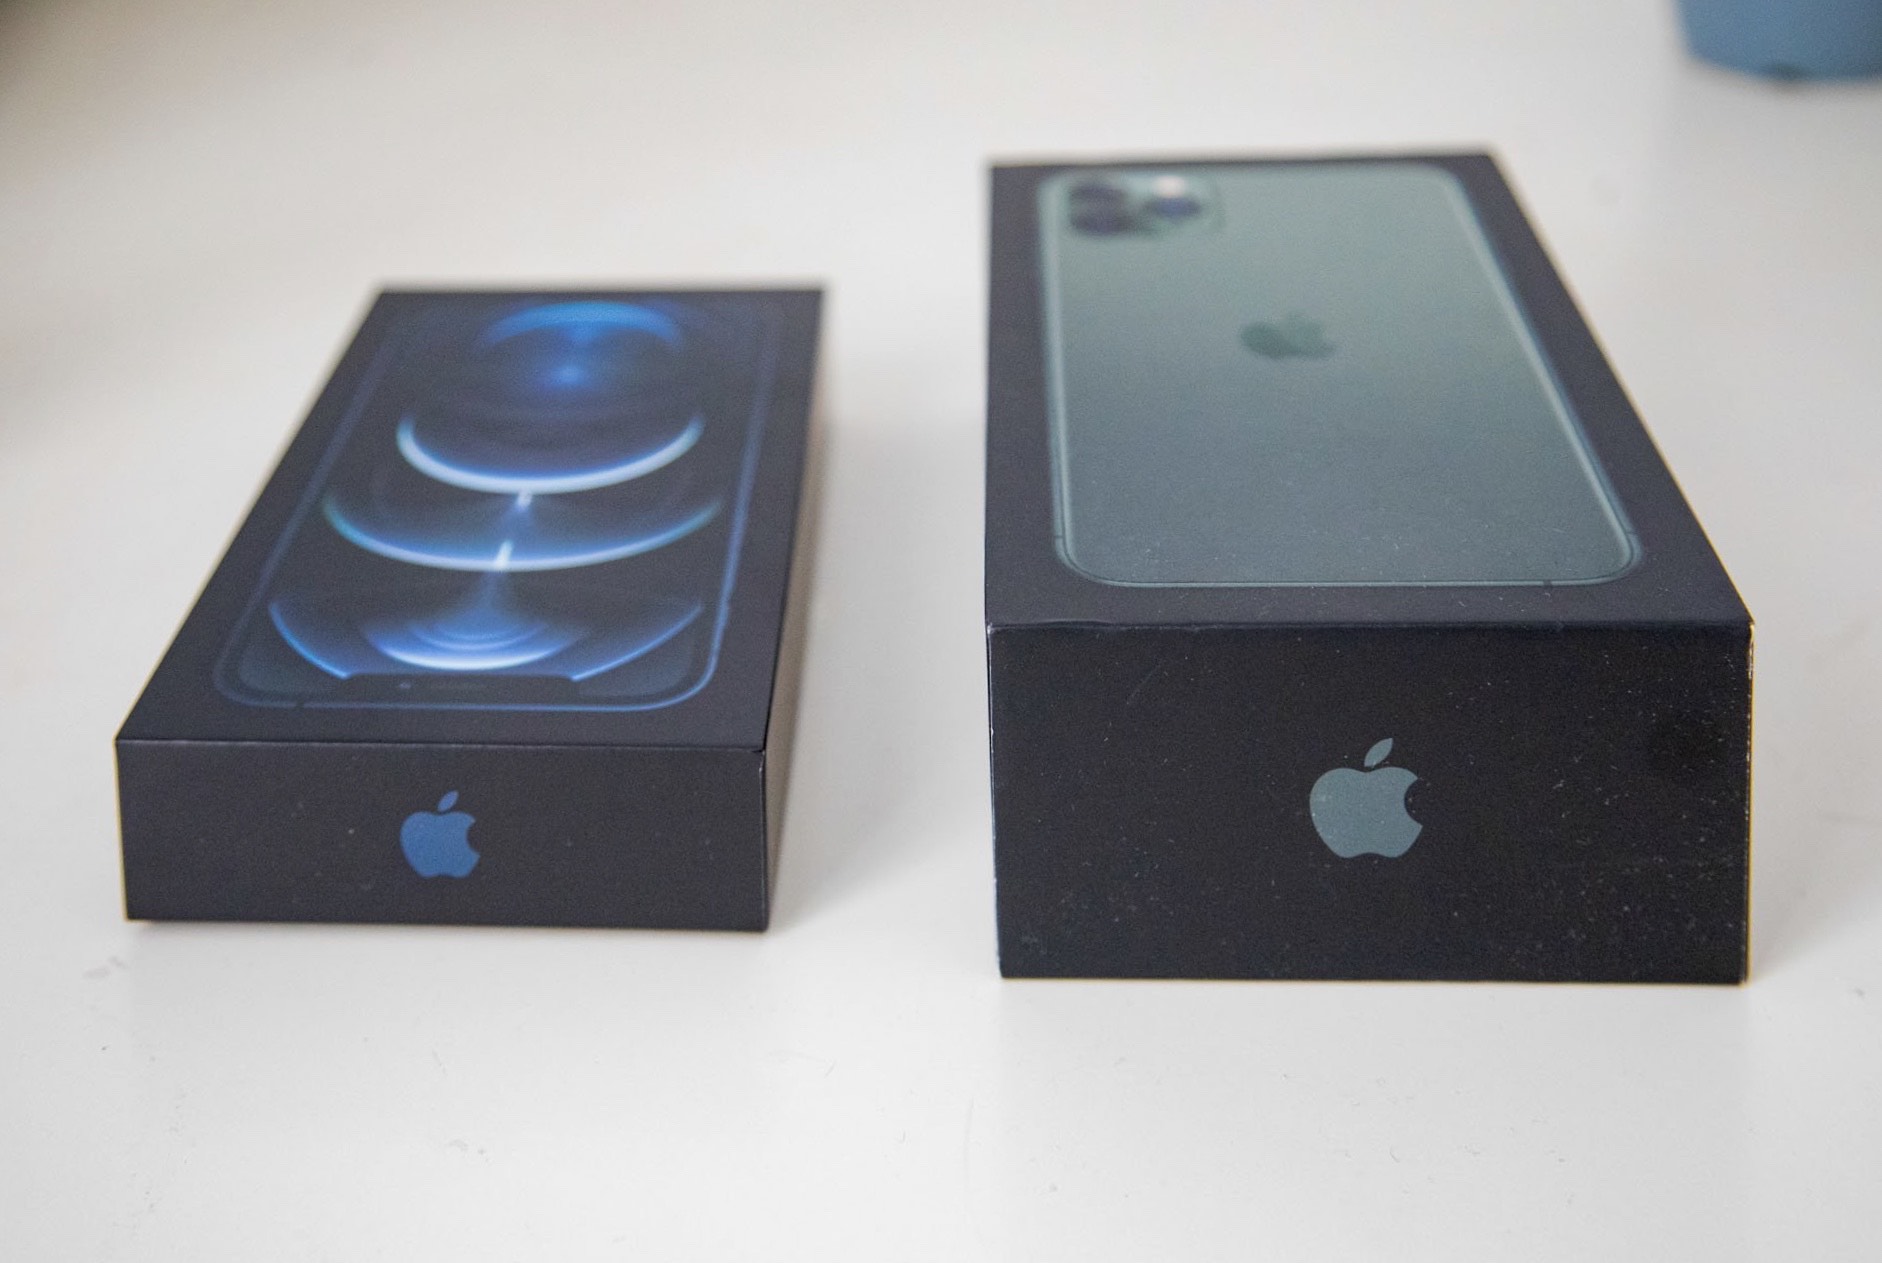 iPhone 12 Pro màu xanh Pacific Blue: Bạn muốn sở hữu chiếc điện thoại đẹp mắt và chất lượng? Hãy xem qua hình ảnh iPhone 12 Pro màu xanh Pacific Blue với thiết kế sang trọng và độc đáo. Màu xanh đặc biệt này giúp sản phẩm trở nên nổi bật và thể hiện cá tính của bạn. Hãy đến và khám phá ngay!